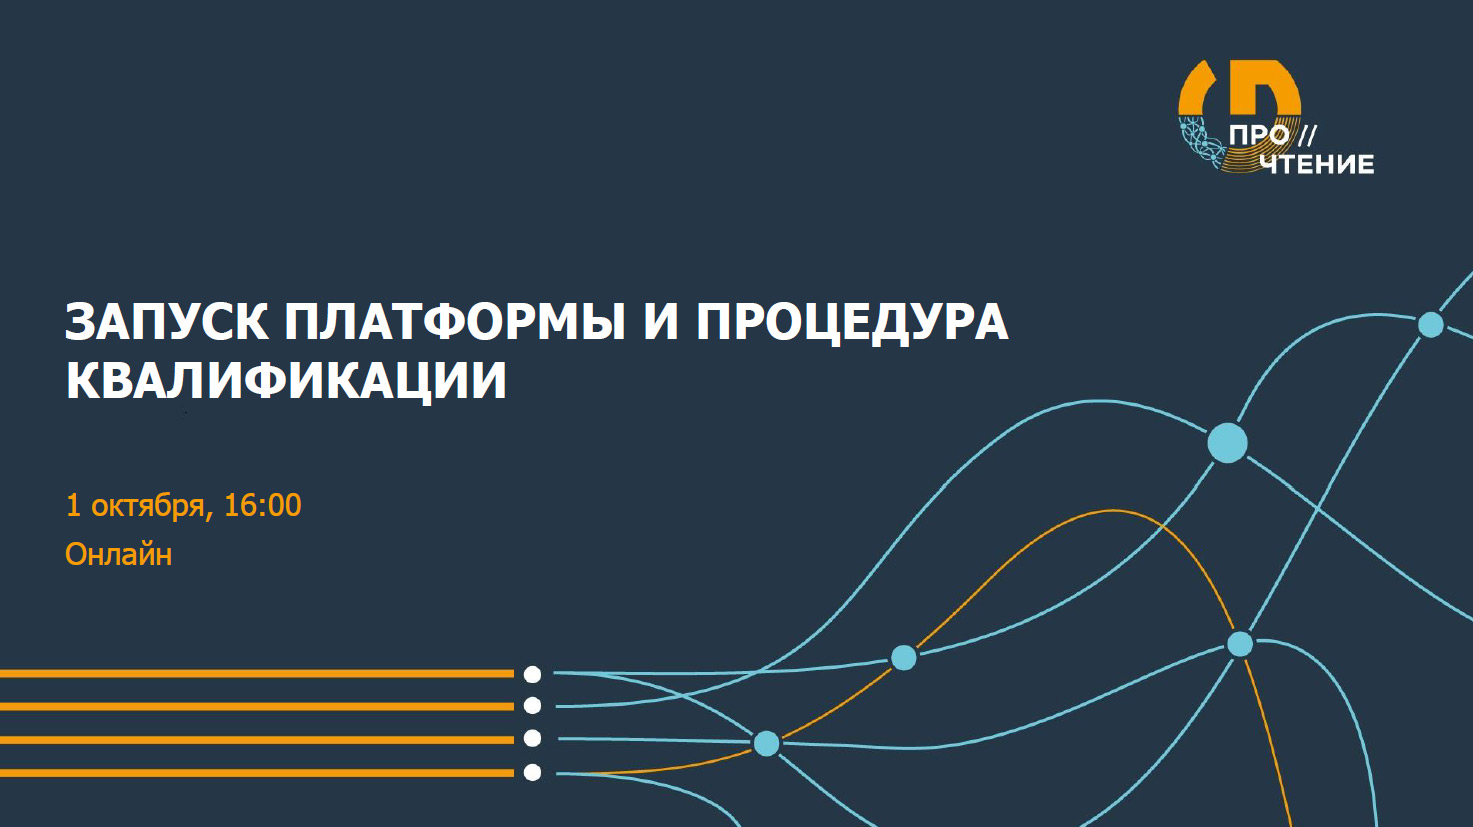 Онлайн-конференция конкурса ПРО//ЧТЕНИЕ: запуск IT-платформы и старт квалификации